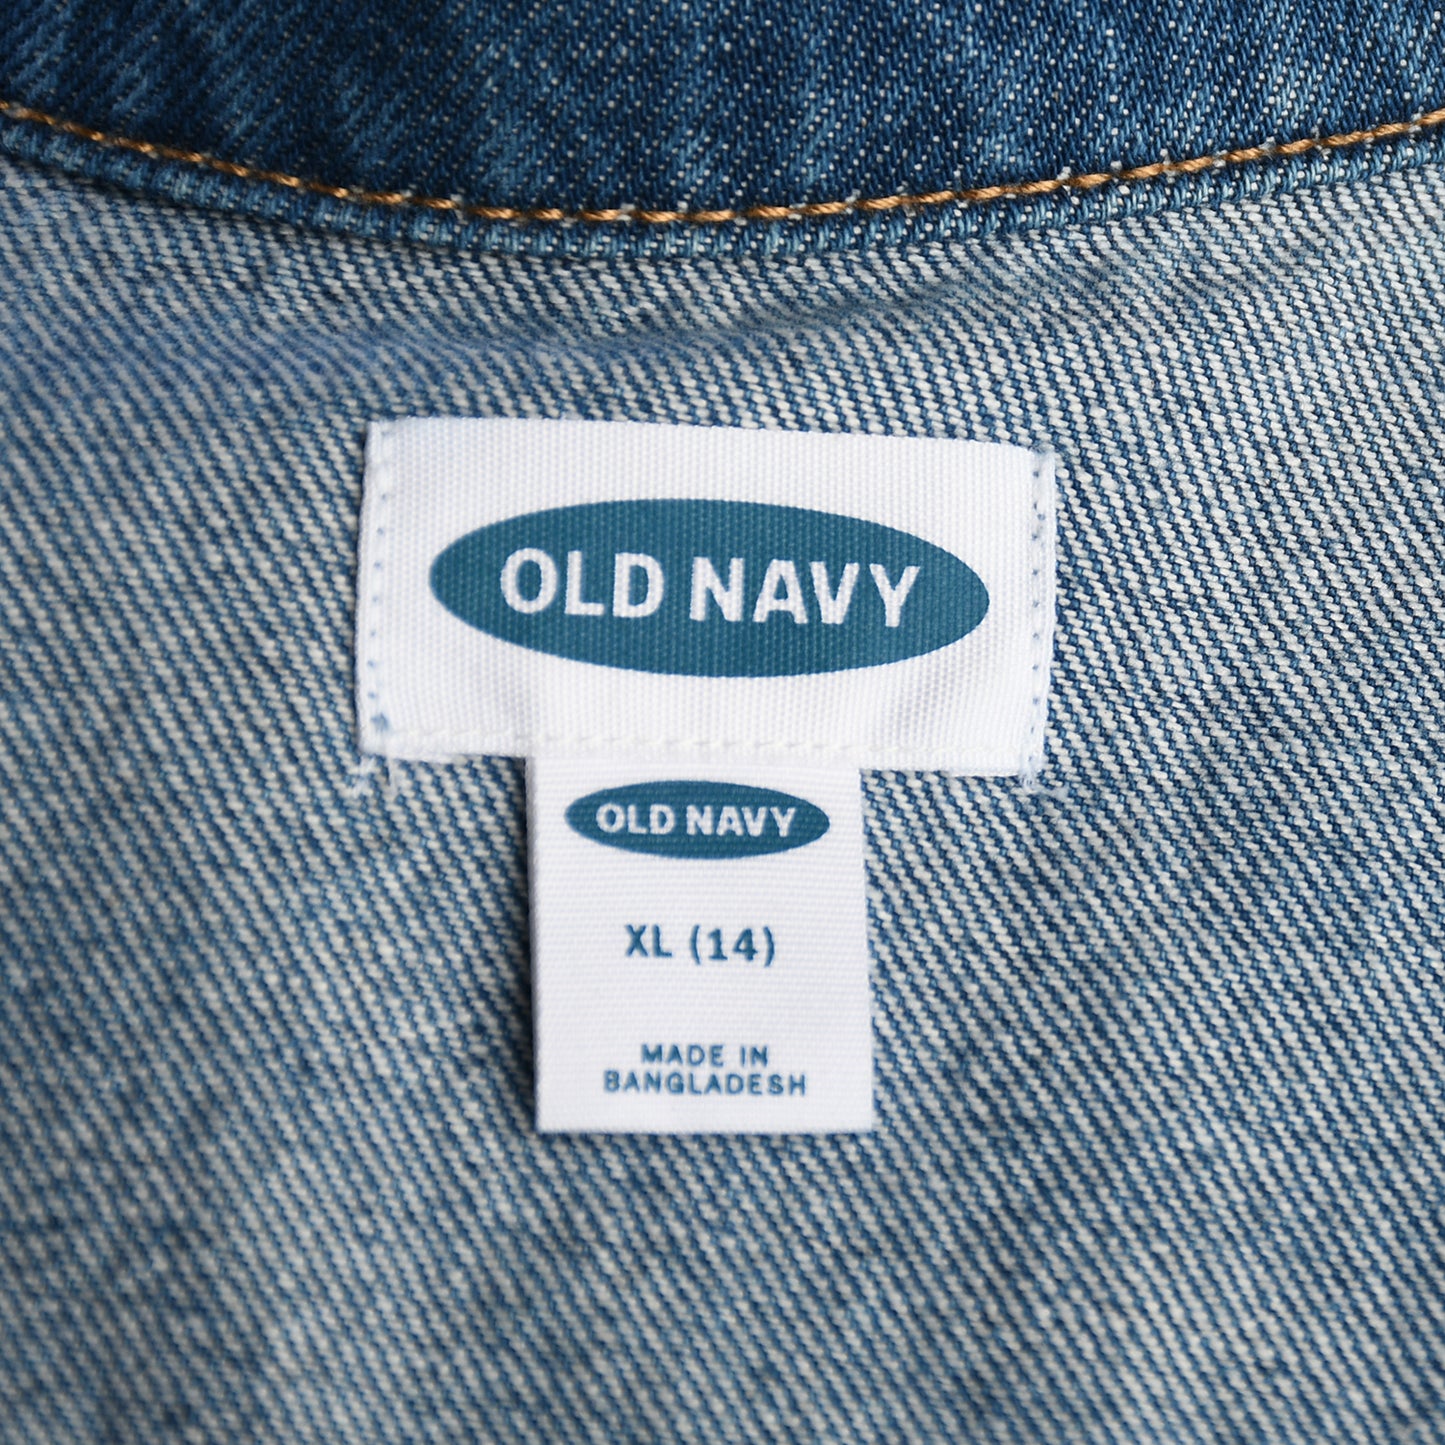 Old Navy Girls’ XL (14) Polka Dot Vest